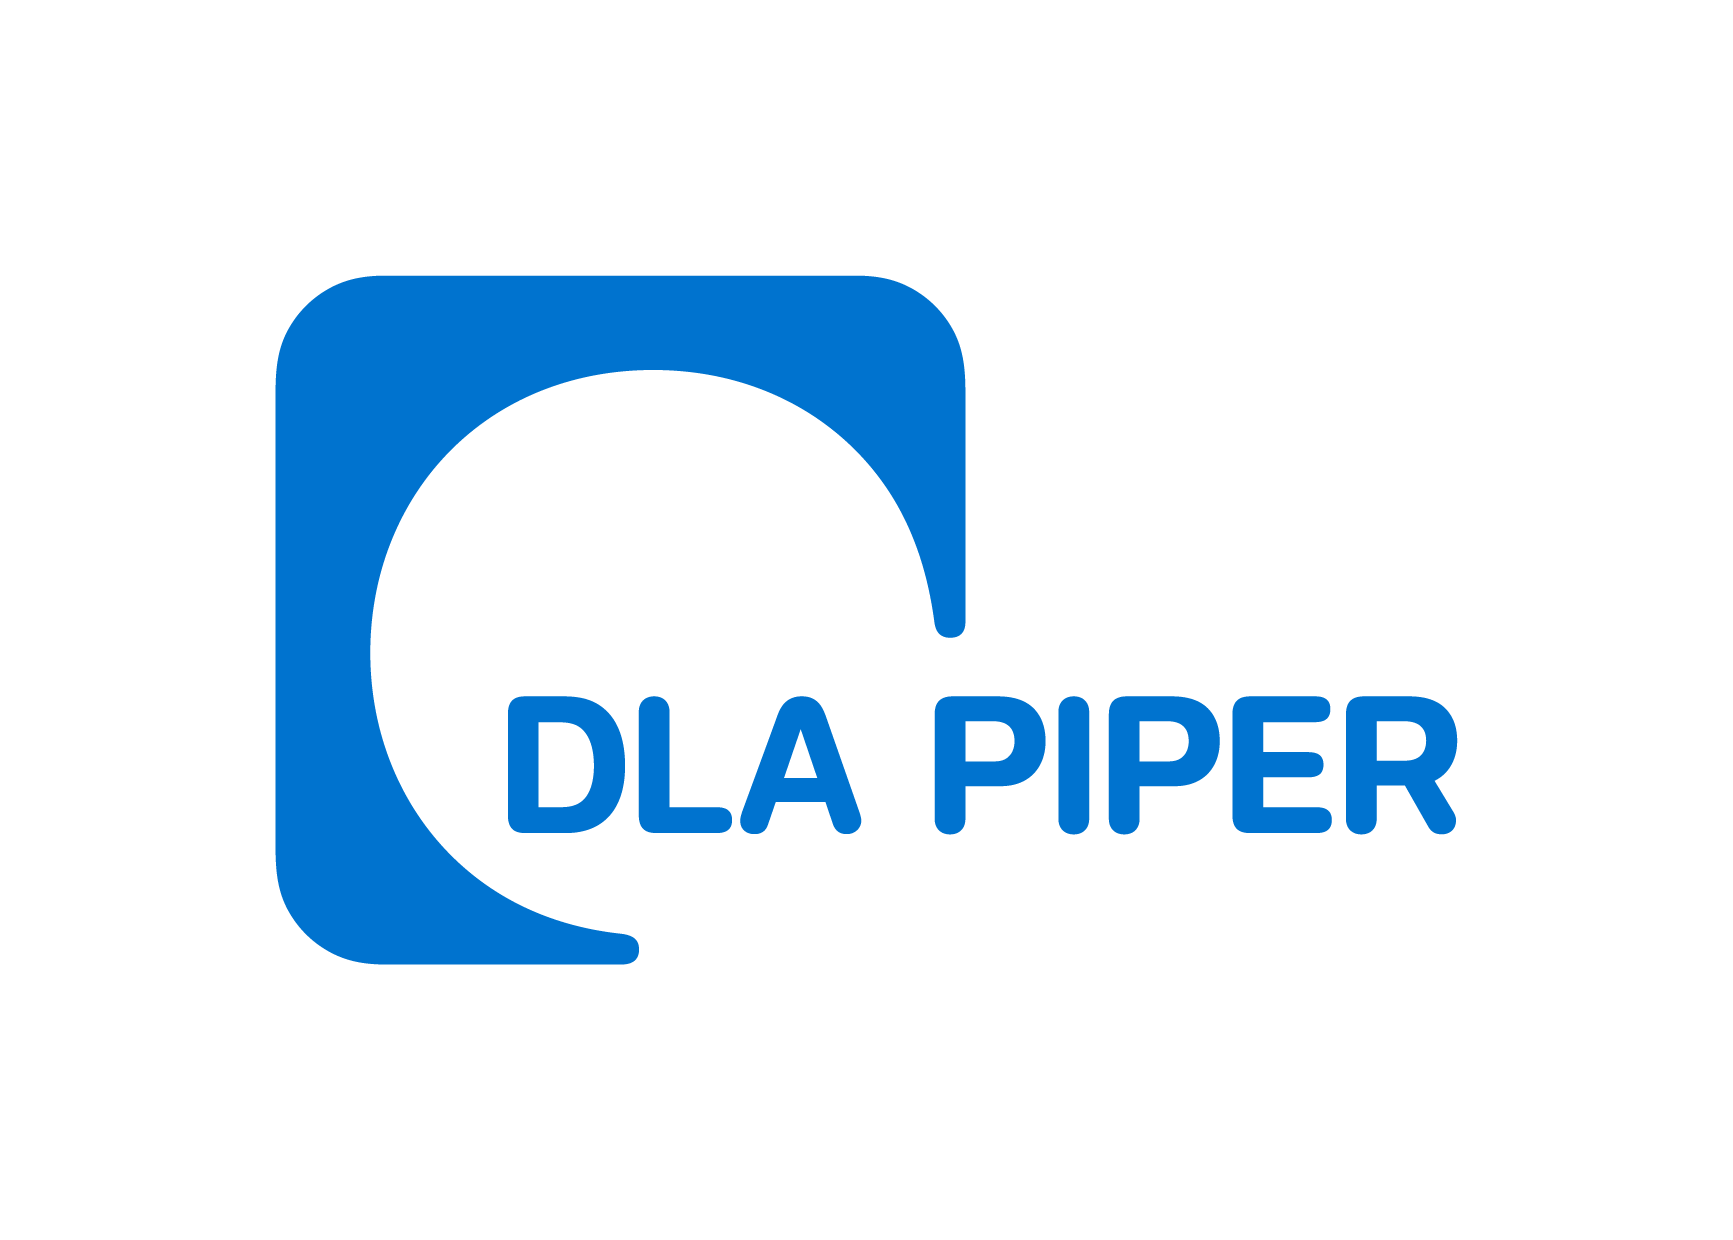 DLA_Piper_Logo